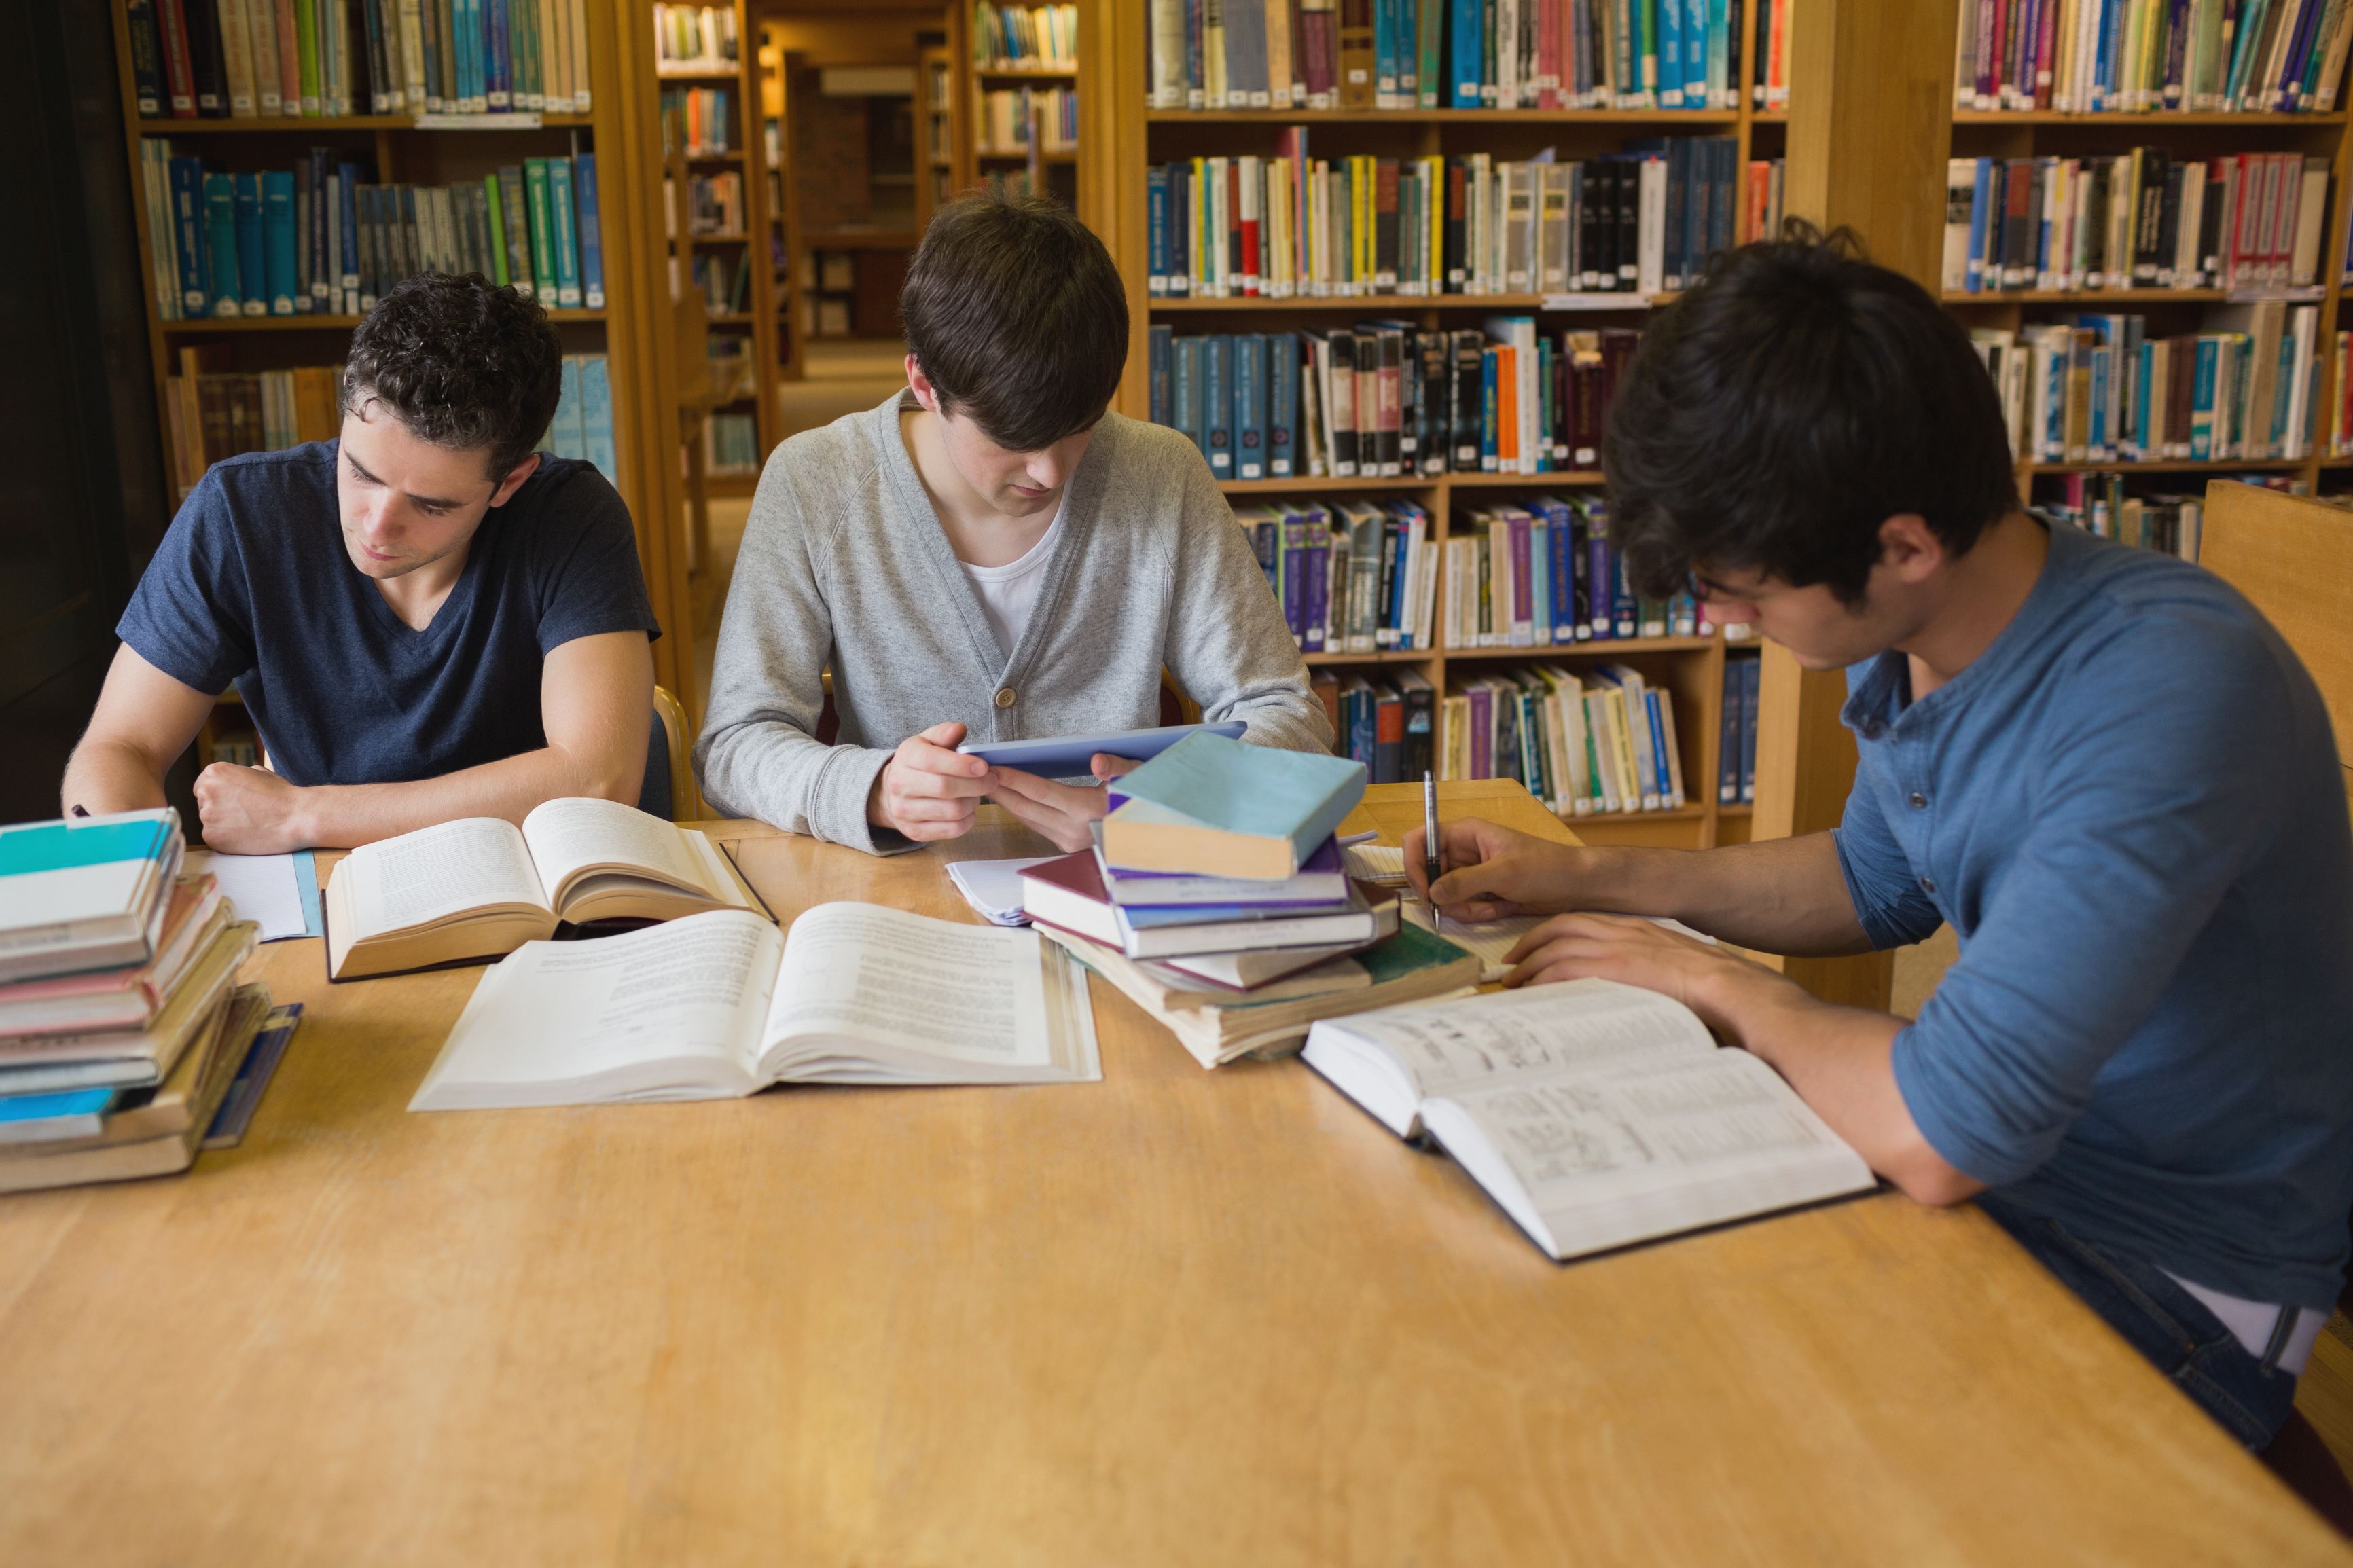 Исследовательская деятельность библиотек. Студенты в библиотеке. Учеба в библиотеке. Читатели в библиотеке. Люди в библиотеке.